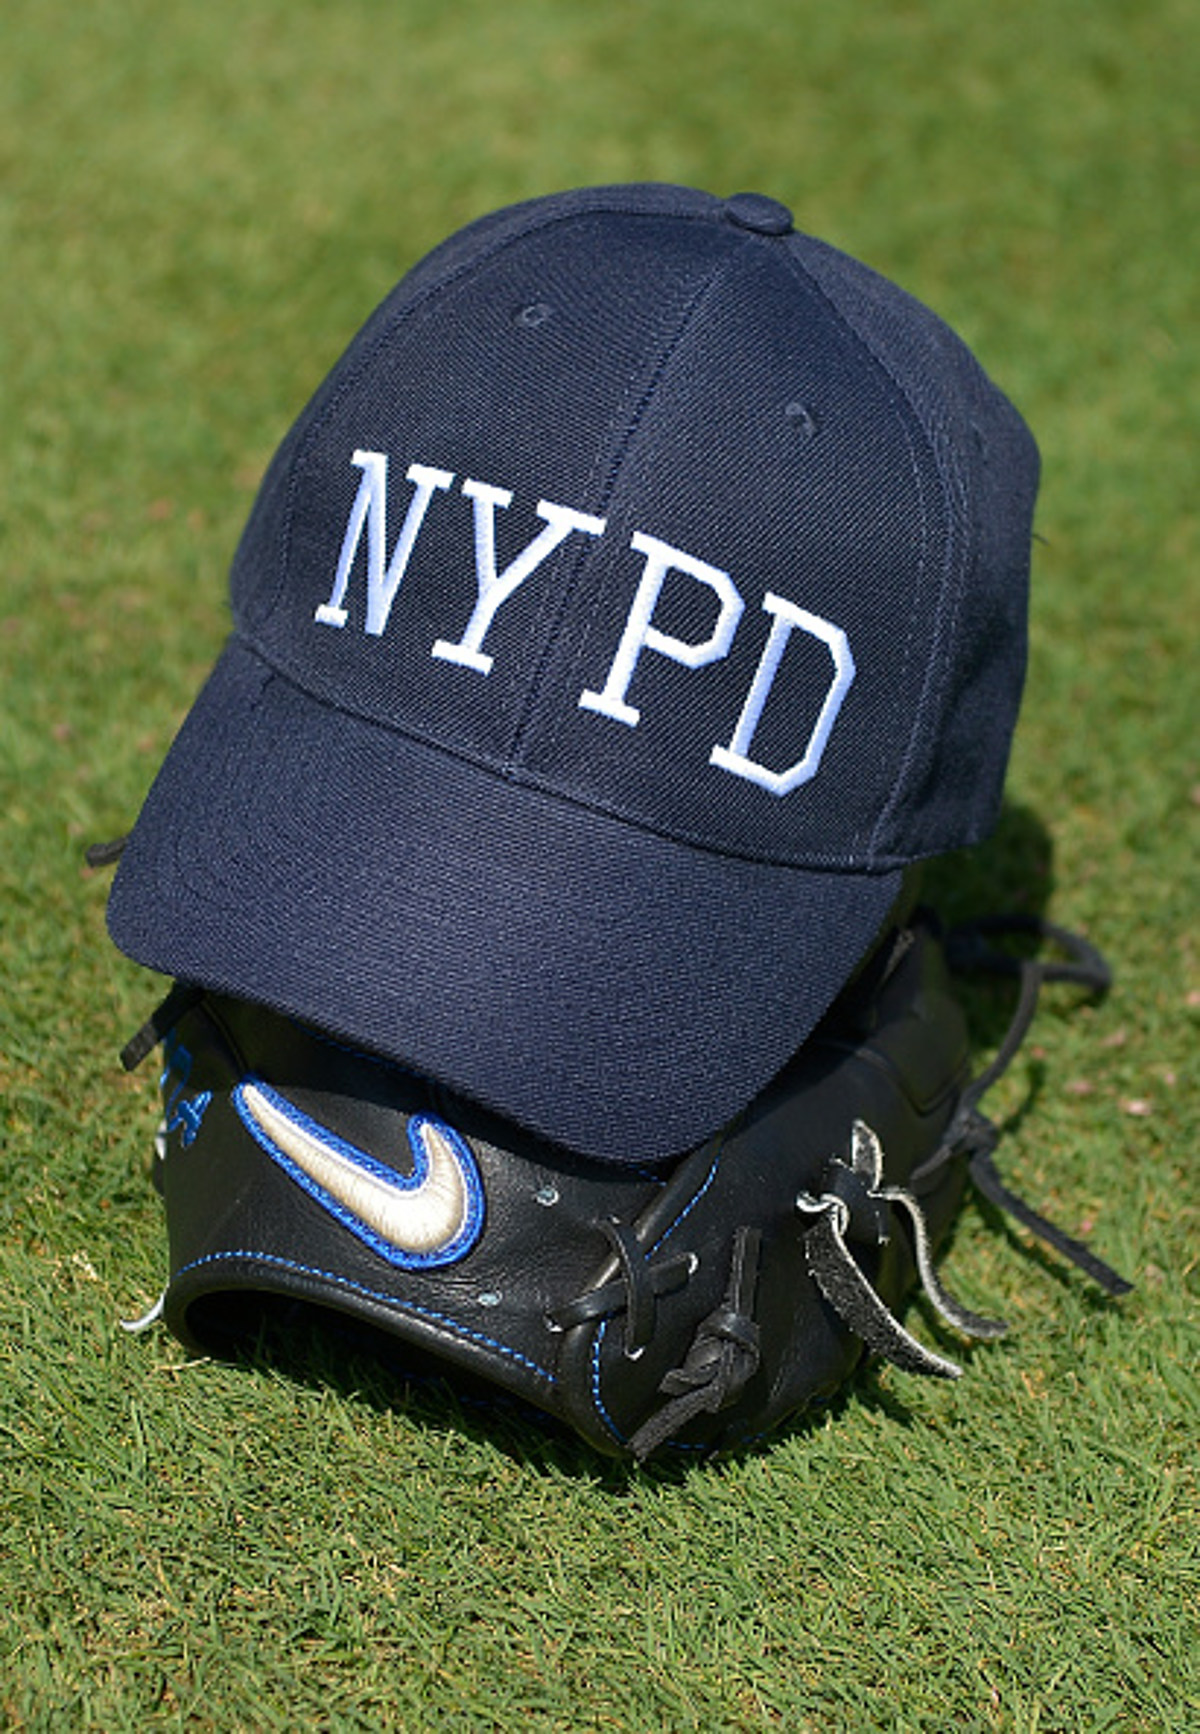 New York Mets & Yankees Remember 9/11 This Weekend